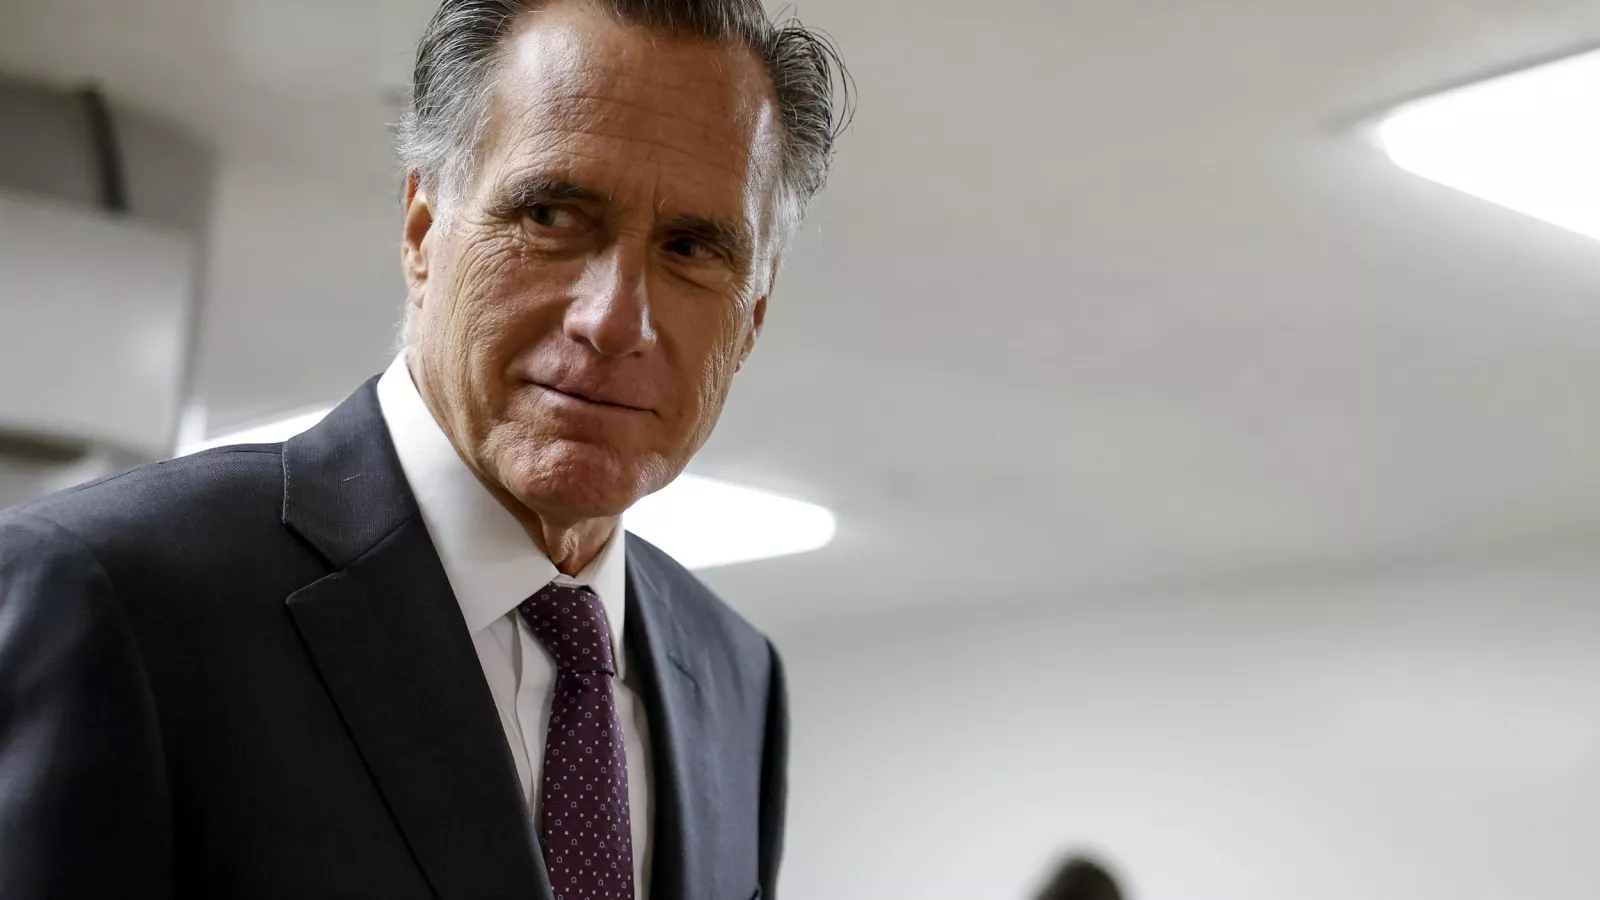 'Sen. Mitt Romney announces decision not to seek re-election'